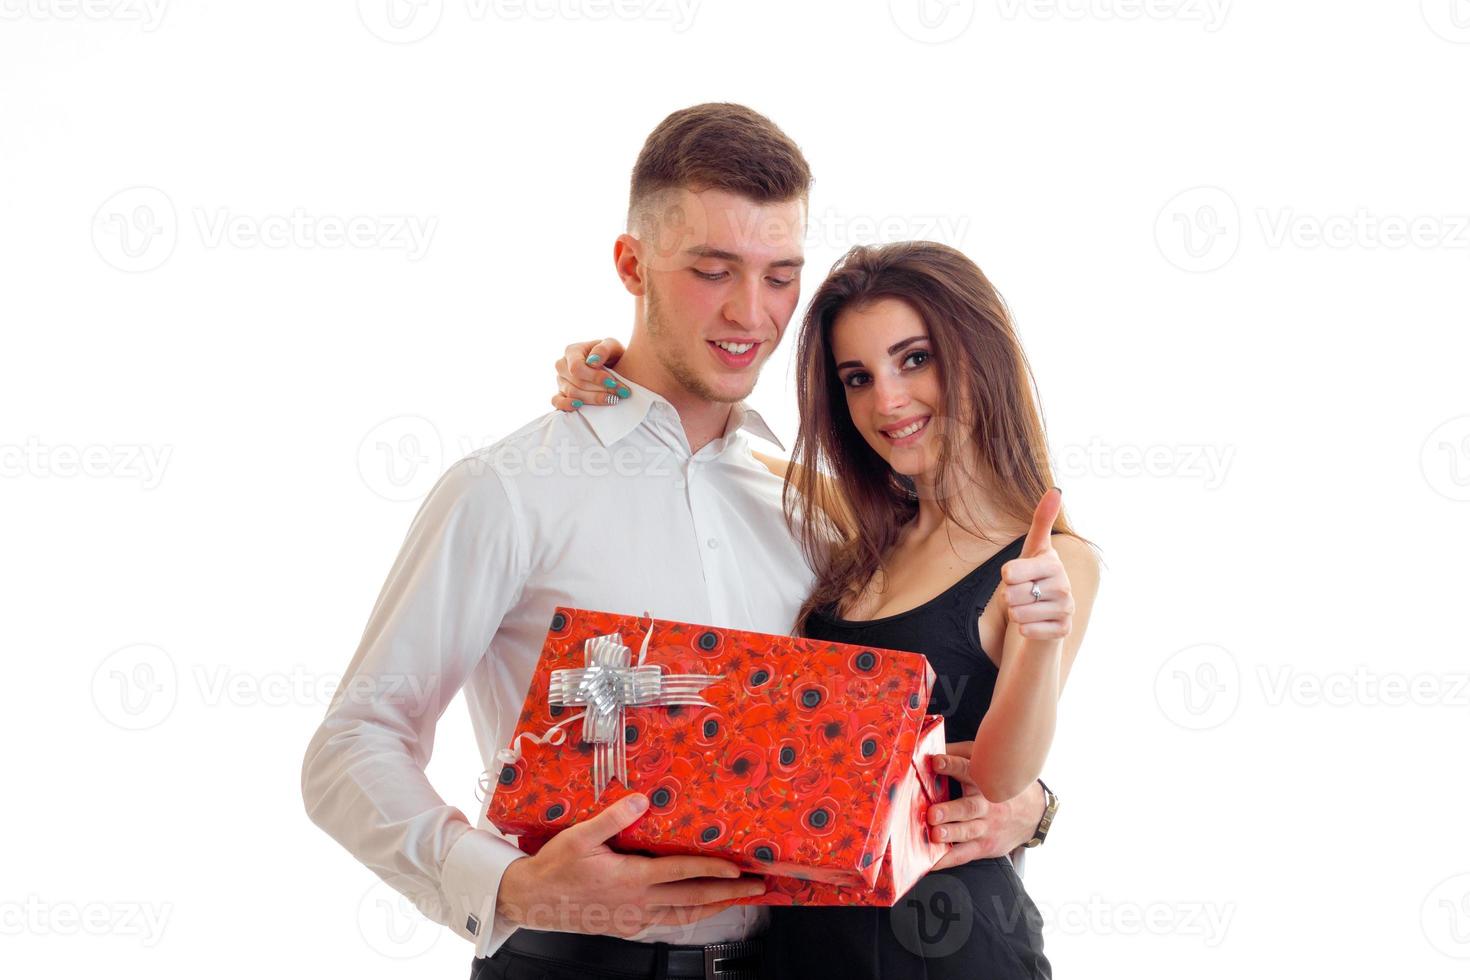 jovem bonito deu um grande presente para uma linda garota e ela está sorrindo foto